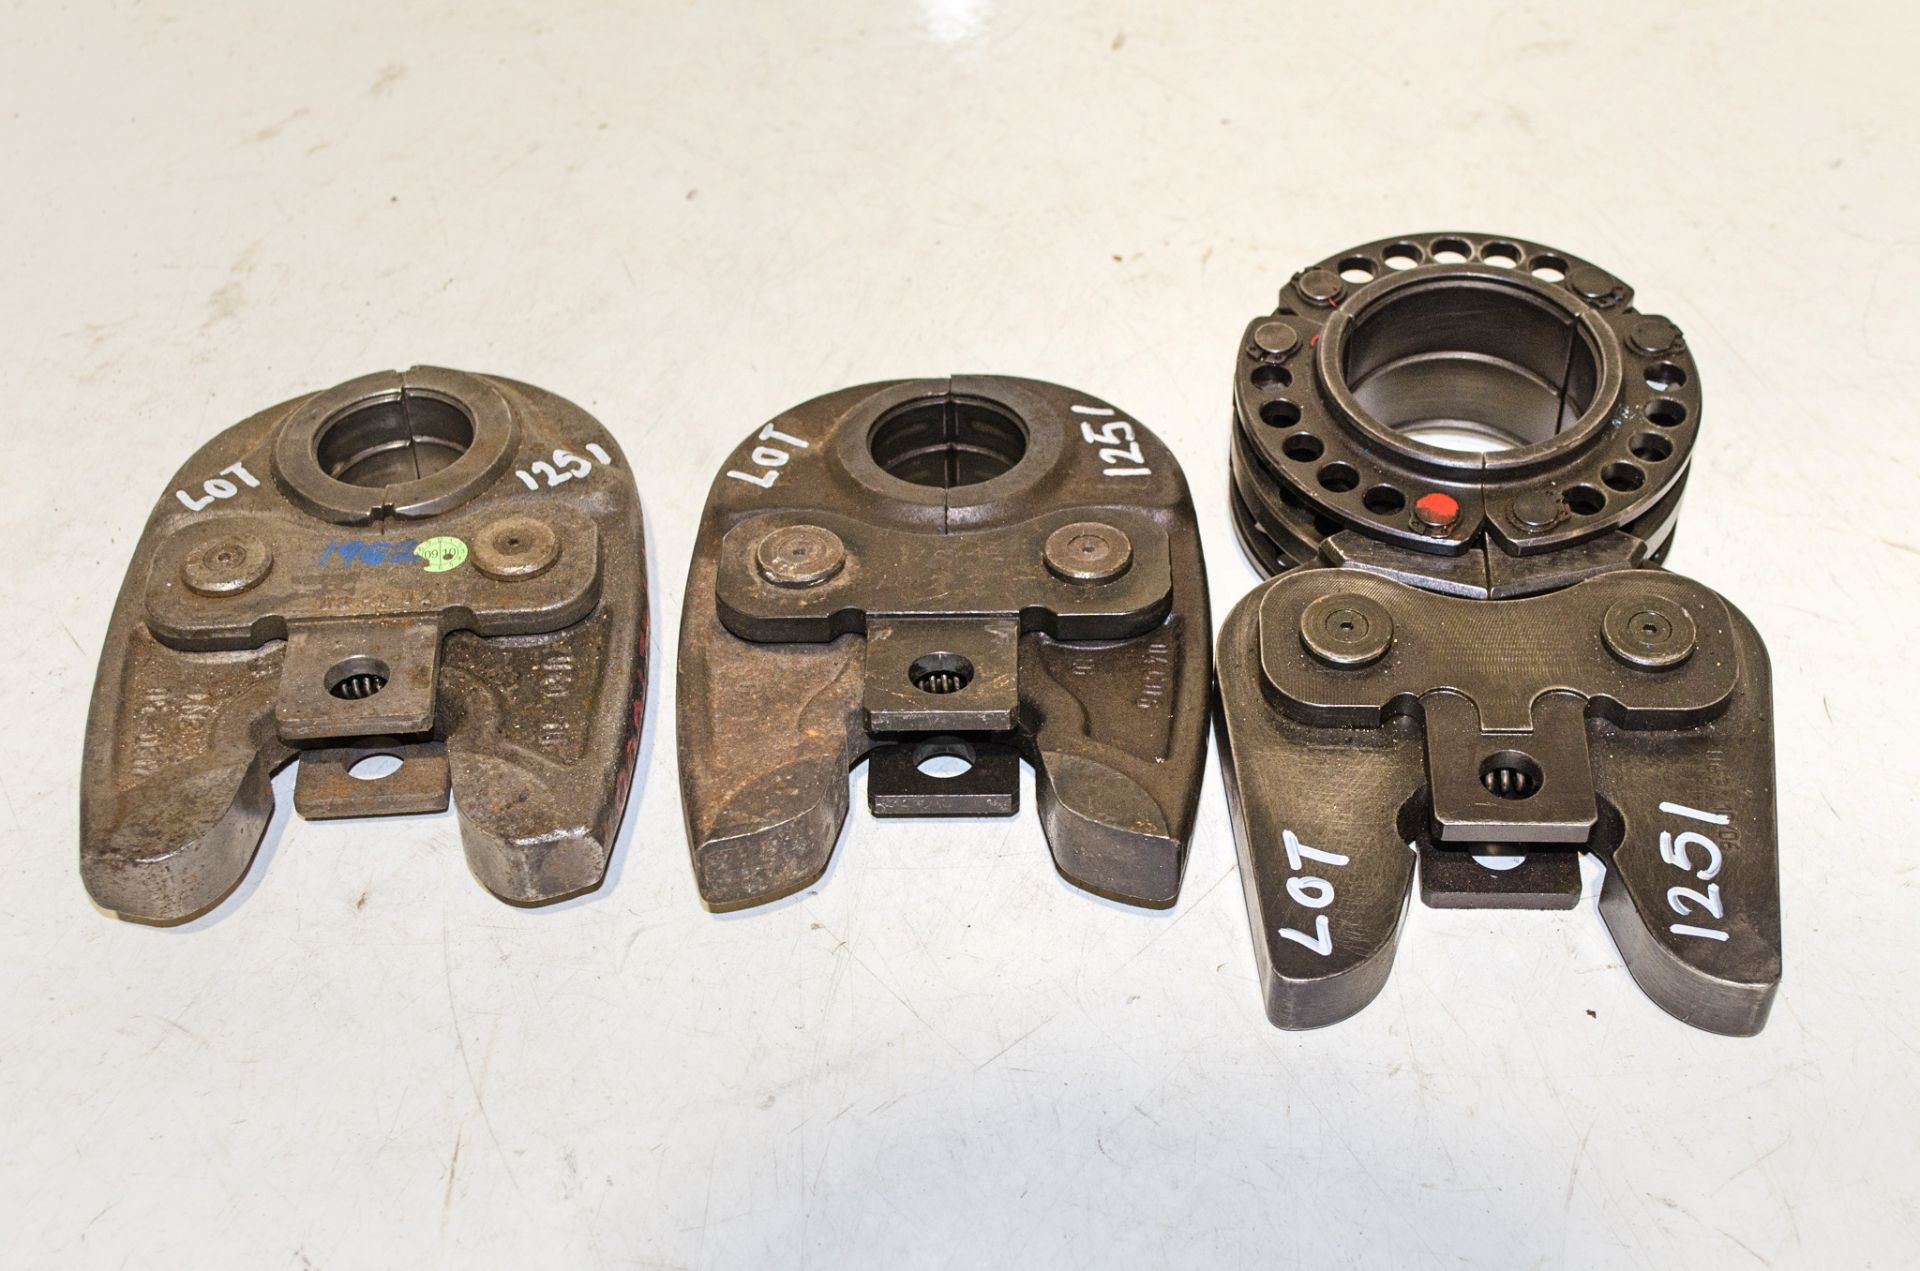 3 - crimper pressing tools 1962-002, 19G20004, 191430003